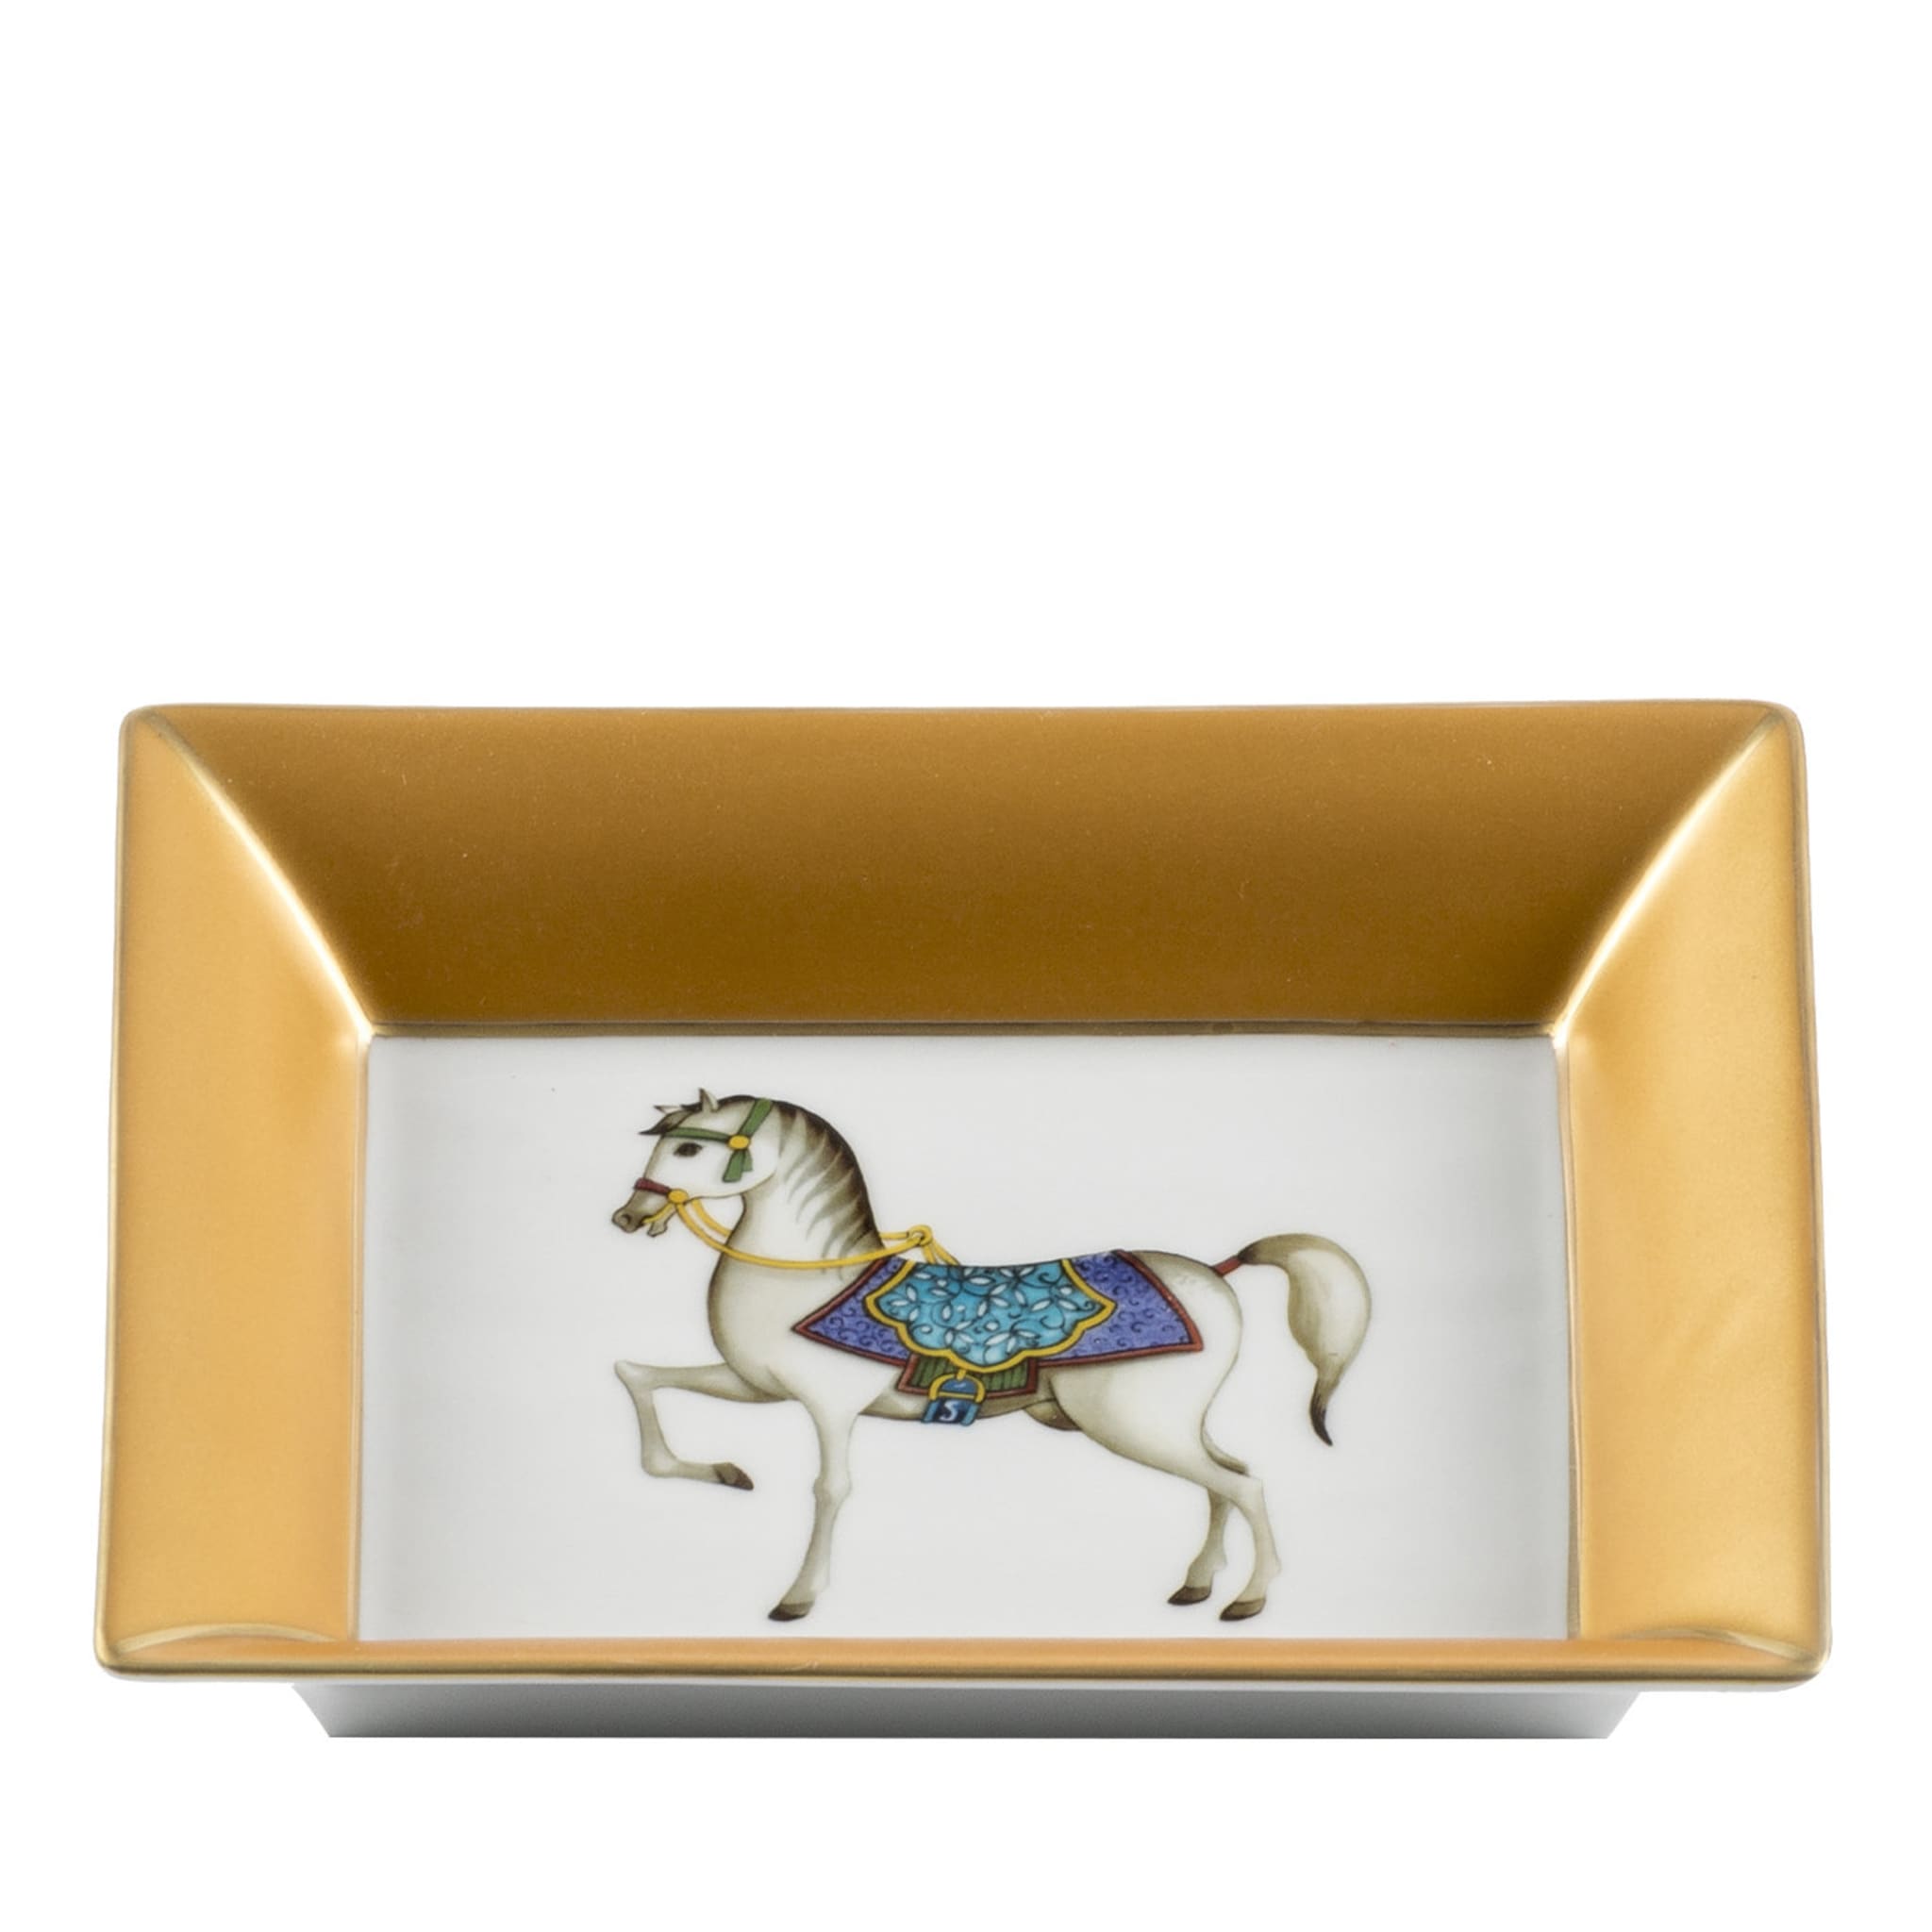 Vide Poche de oro con caballo blanco - Vista principal